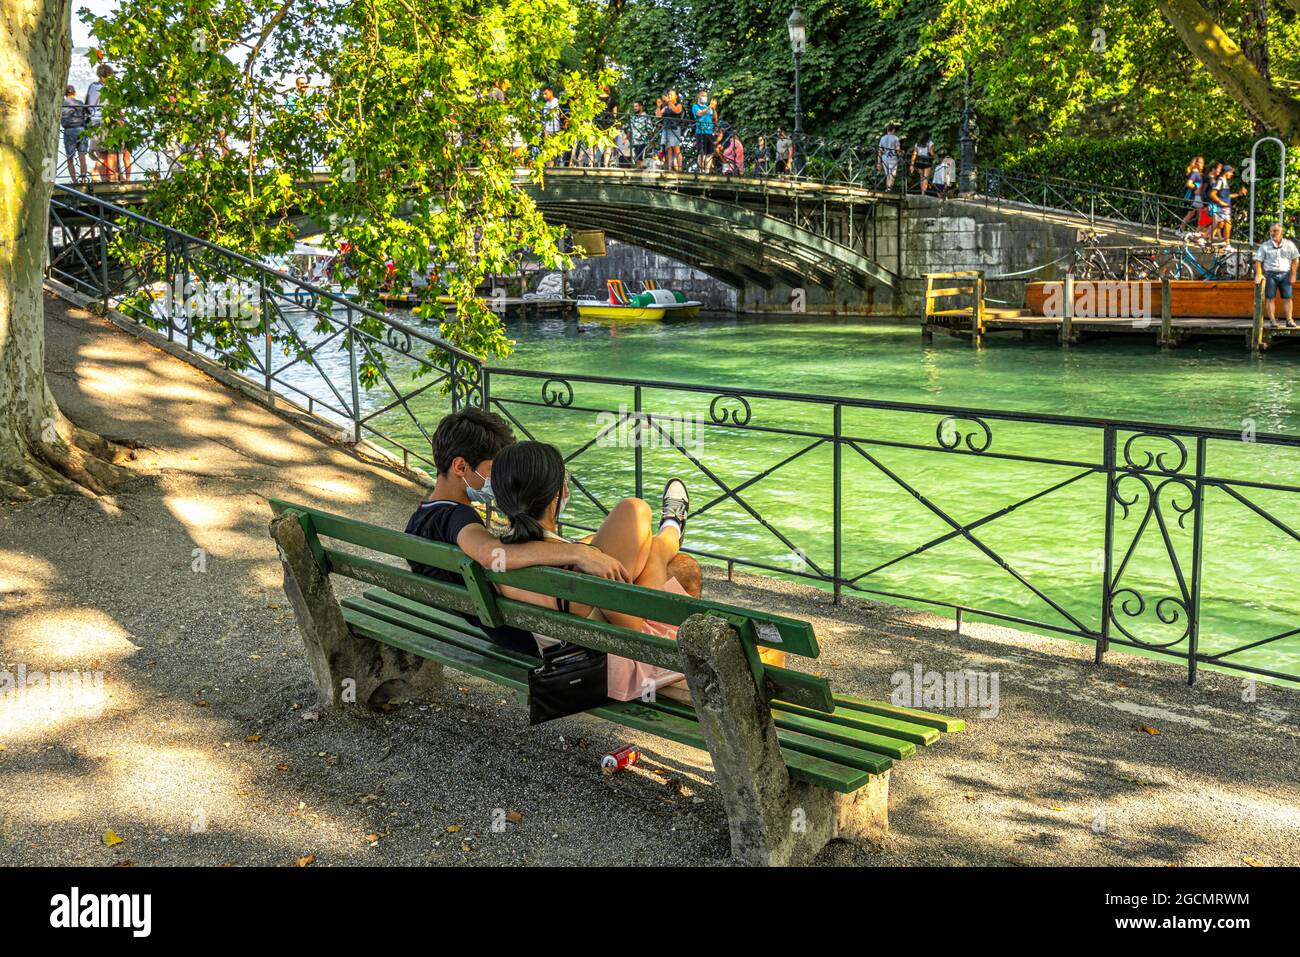 Deux amoureux en face du pont des amoureux d'Annecy observent le passage des touristes lors d'une journée d'été. Annecy, département Savoie, France Banque D'Images